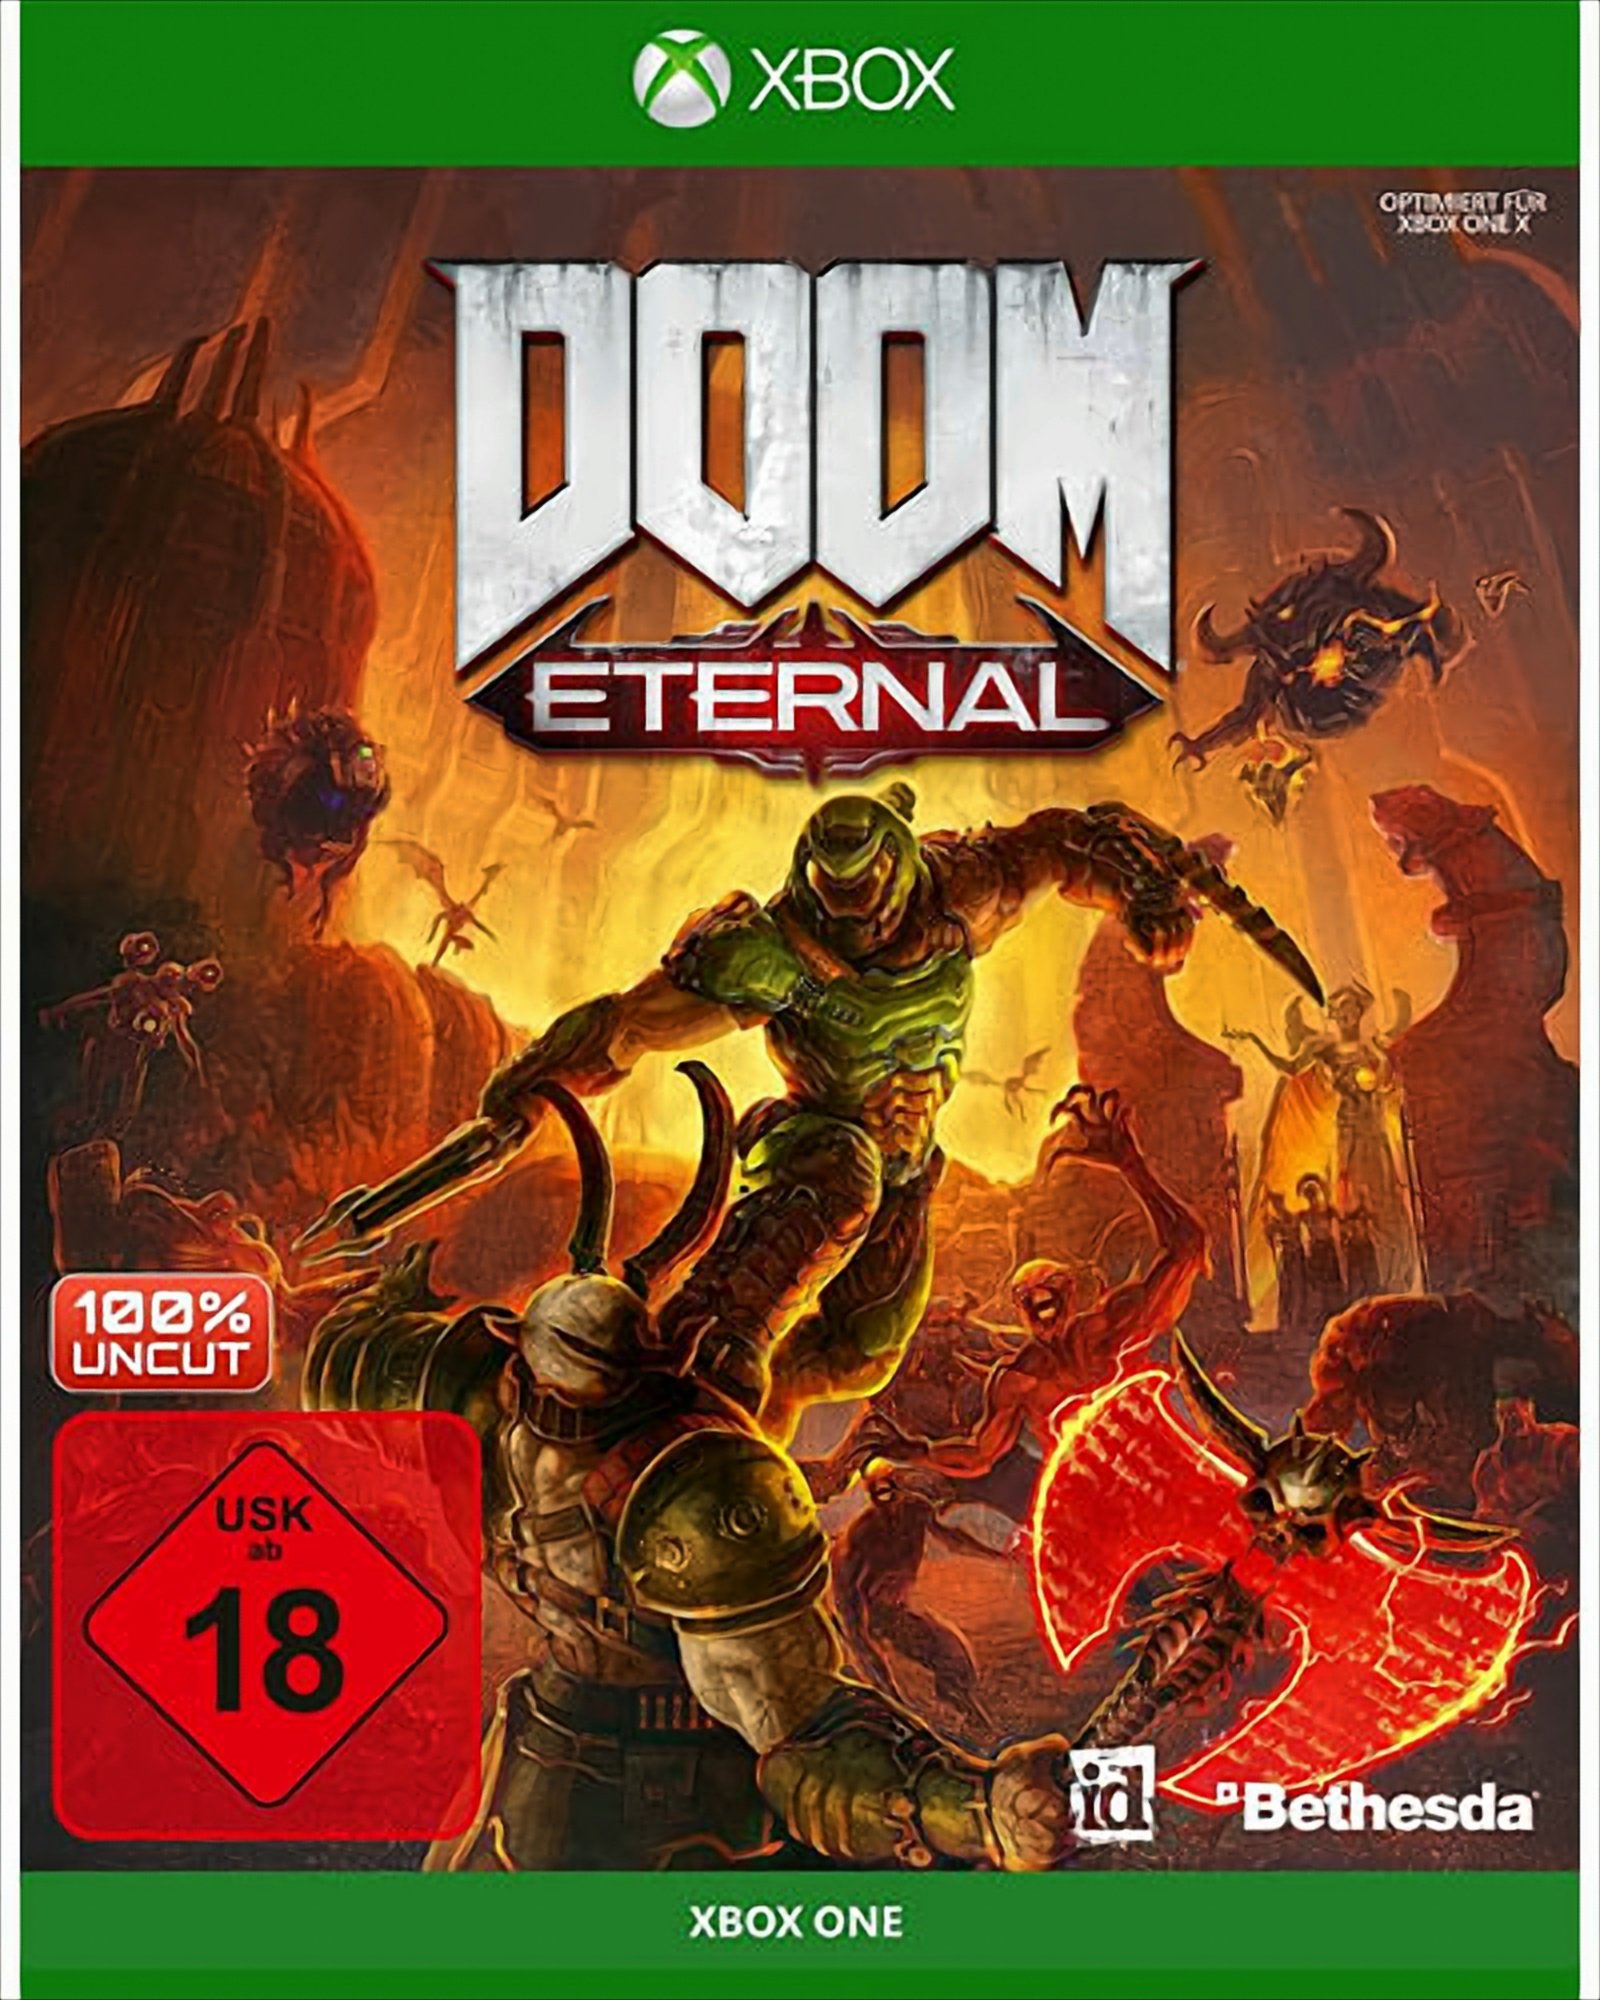 - XB-One Eternal Doom One] [Xbox